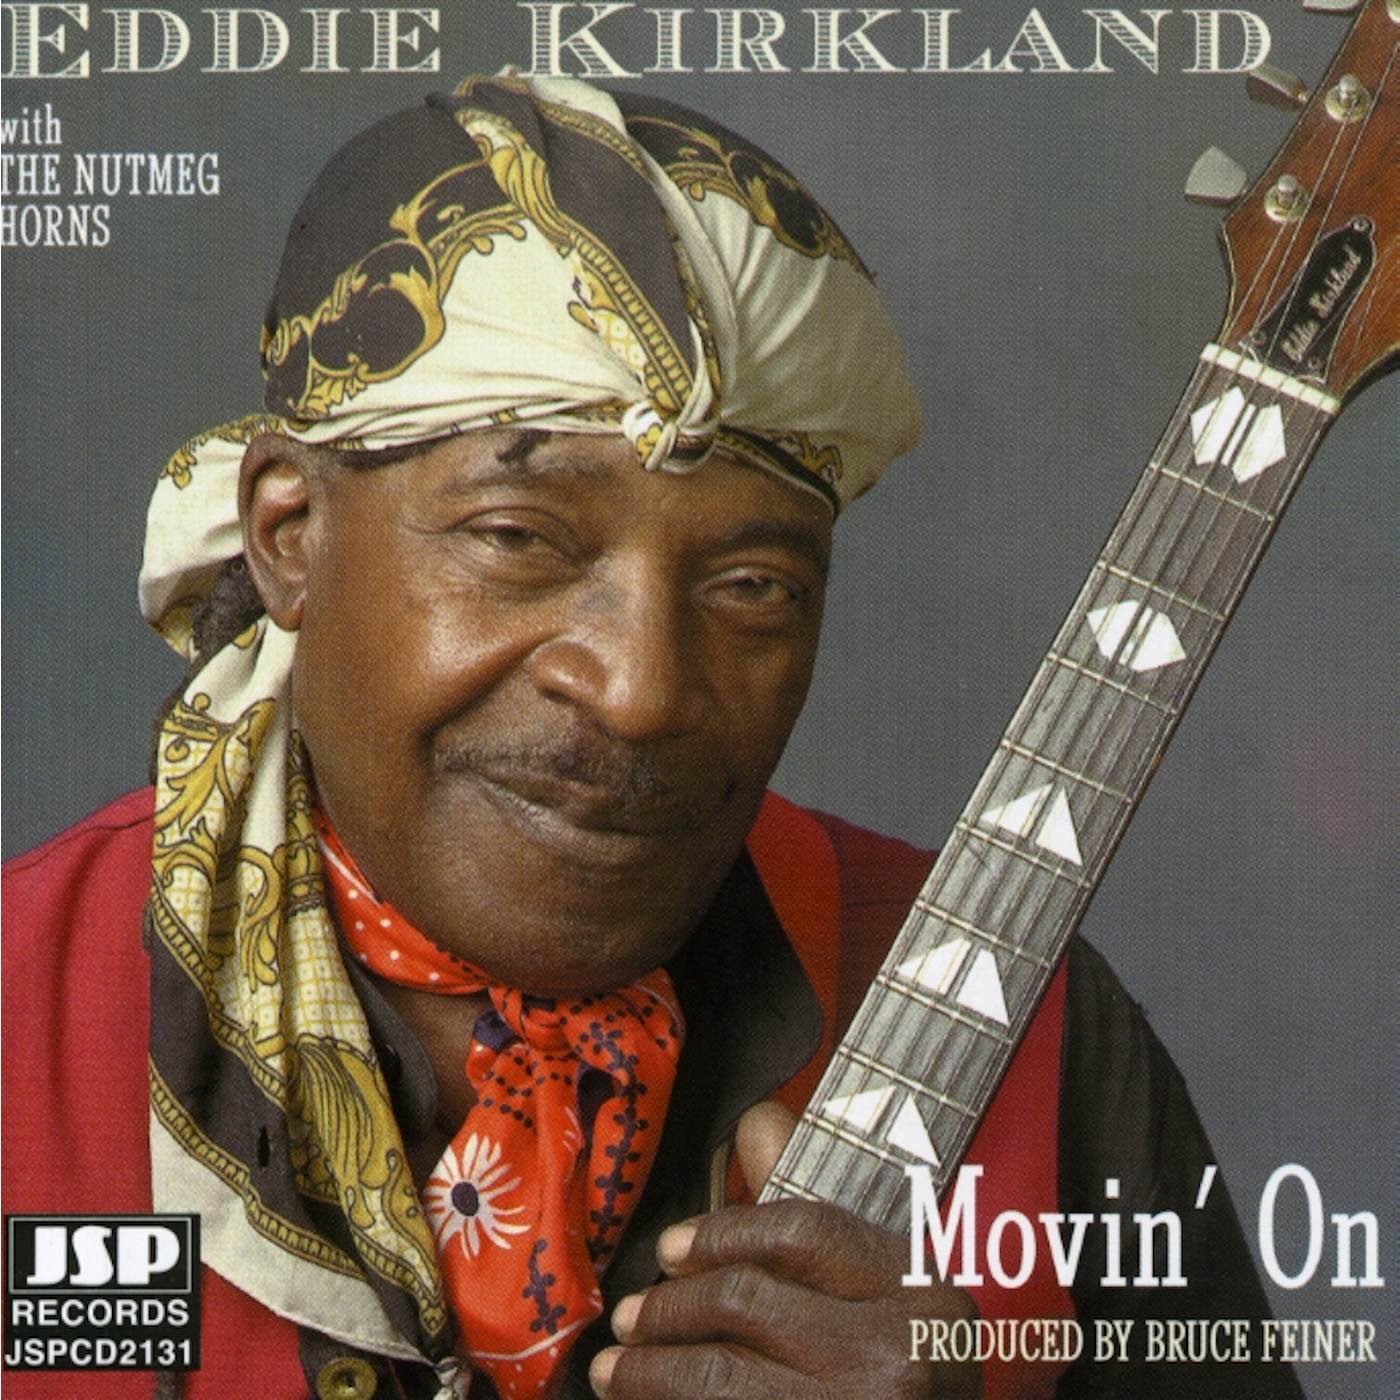 Eddie Kirkland MOVIN' ON CD